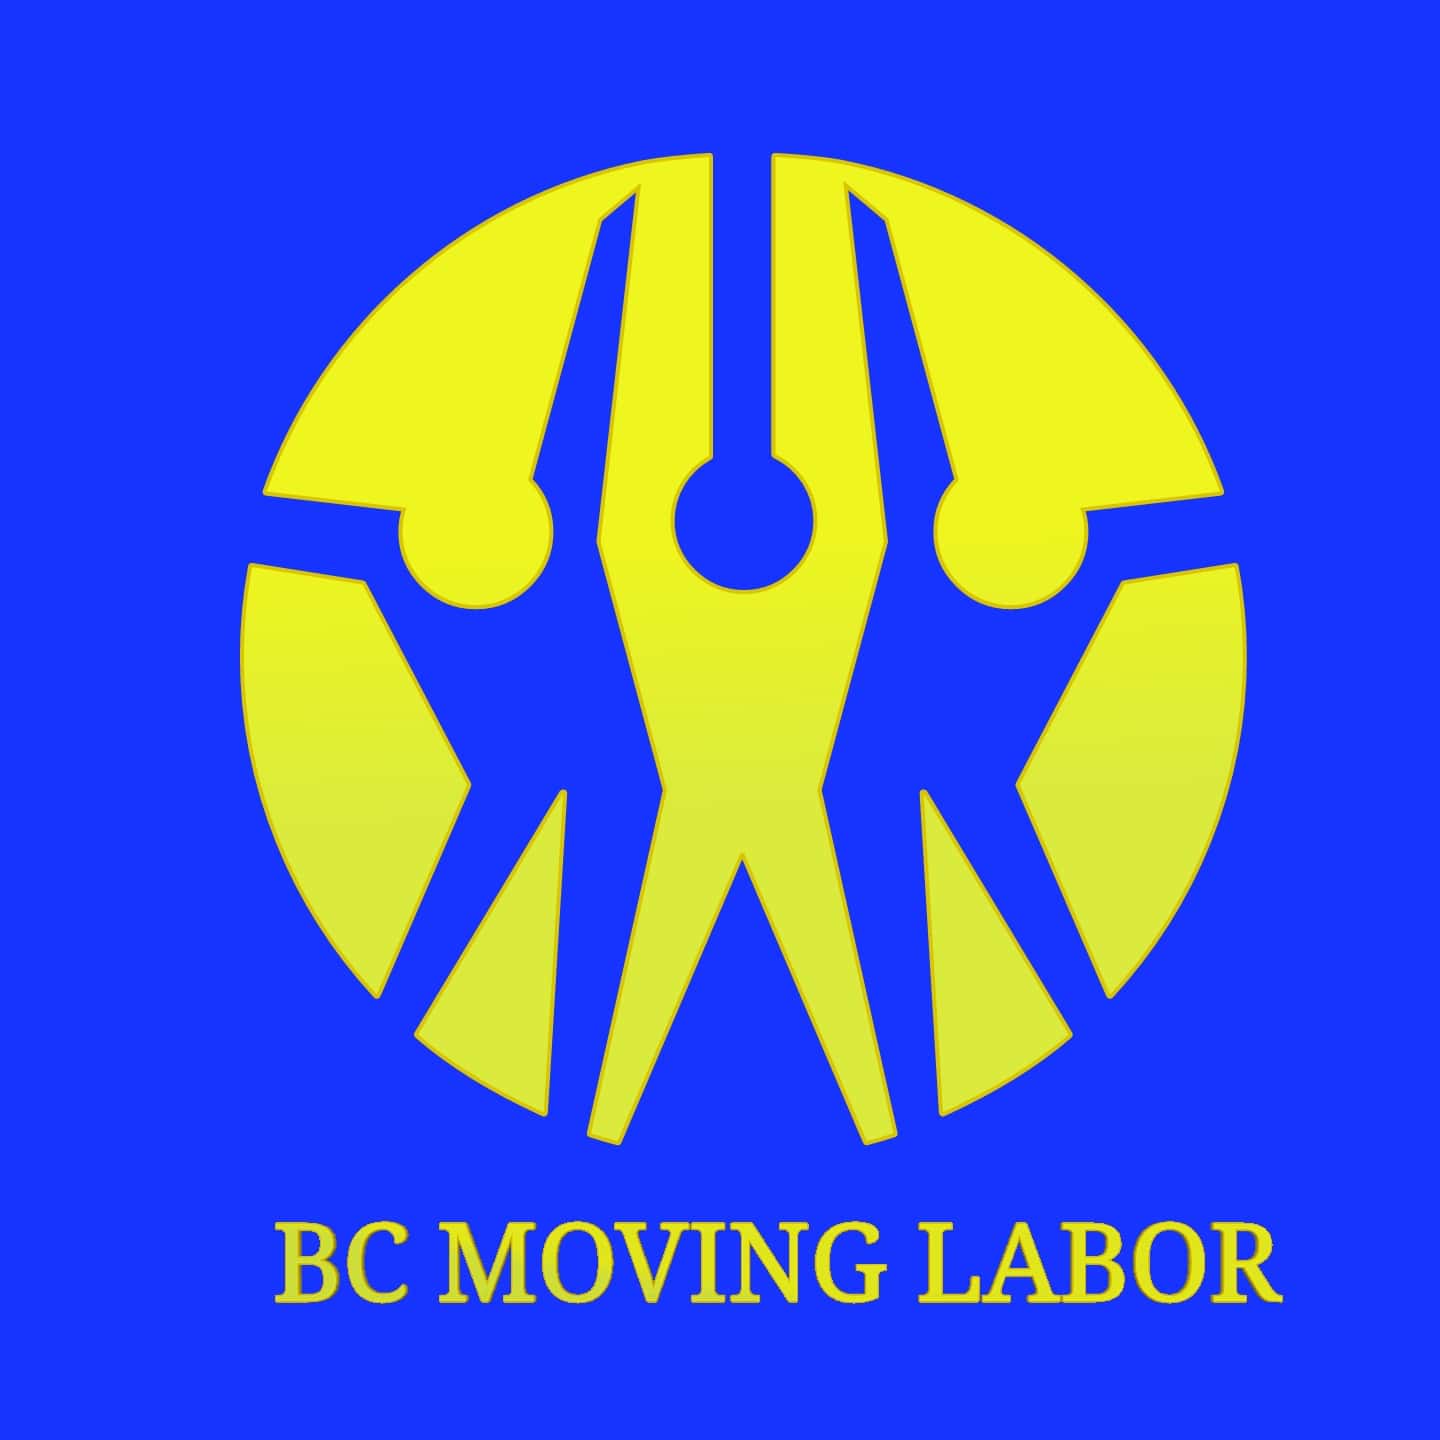 bc moving labor logo